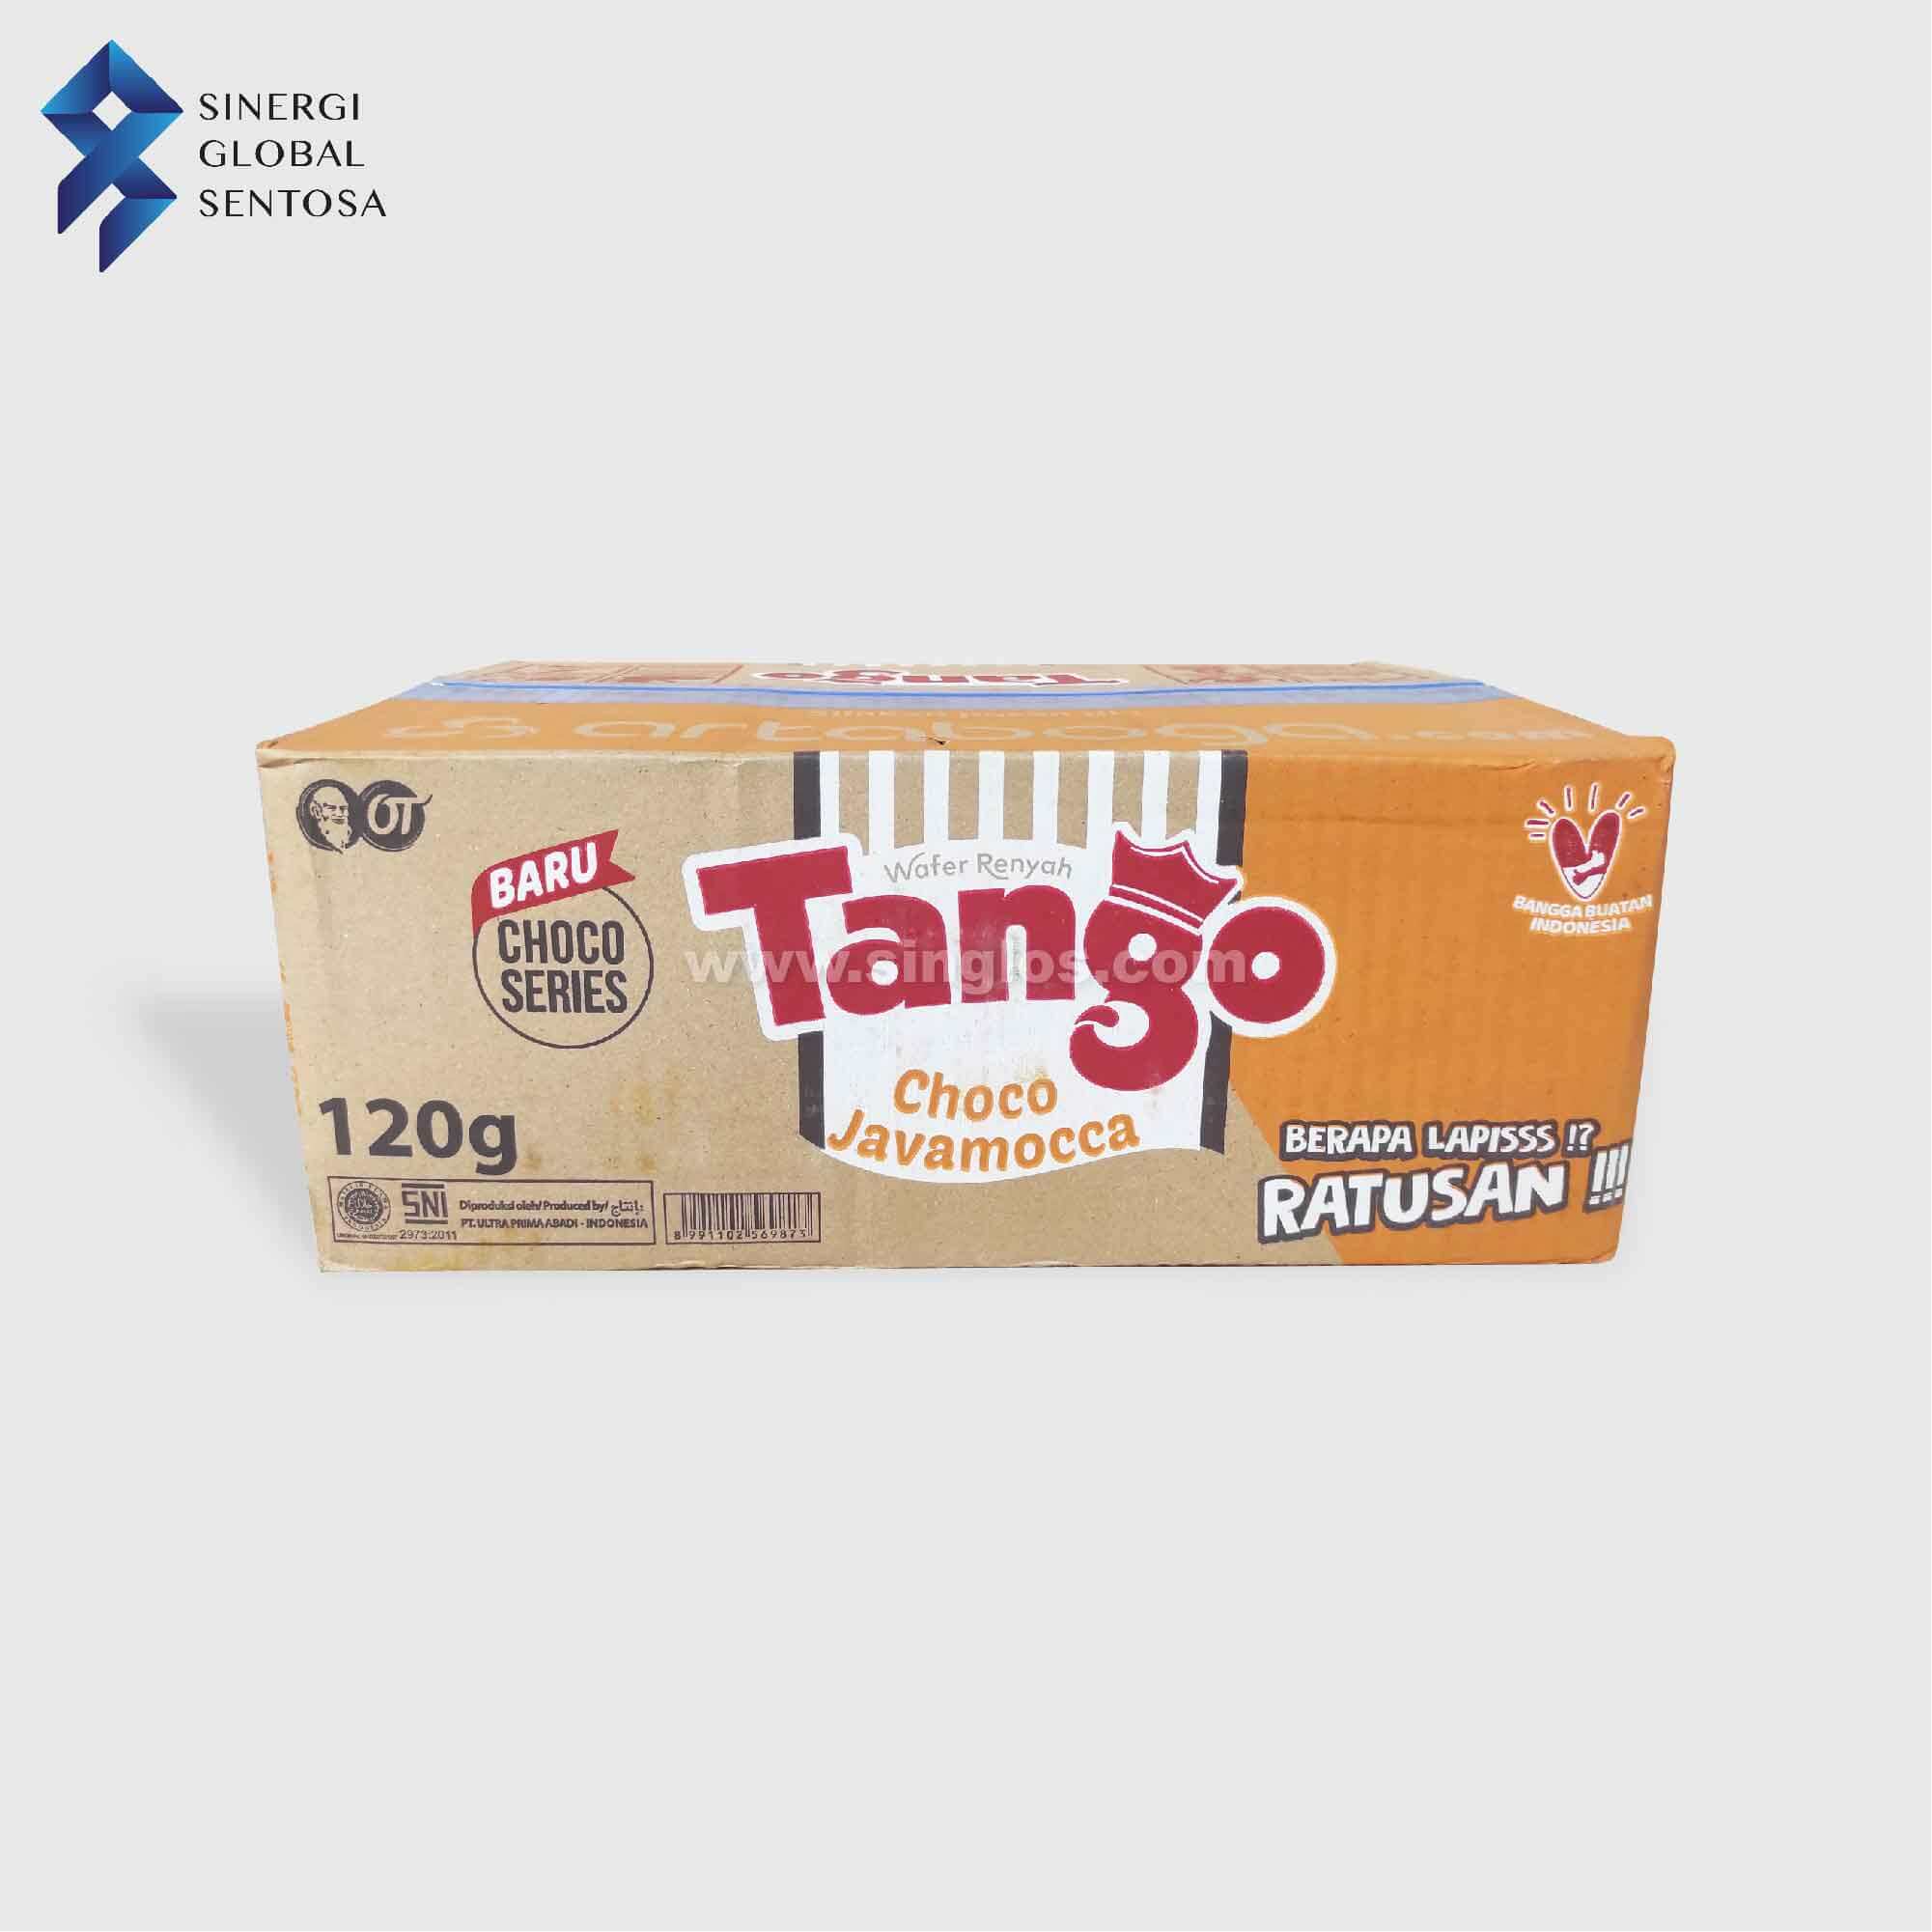 Tango Waver Javamocca